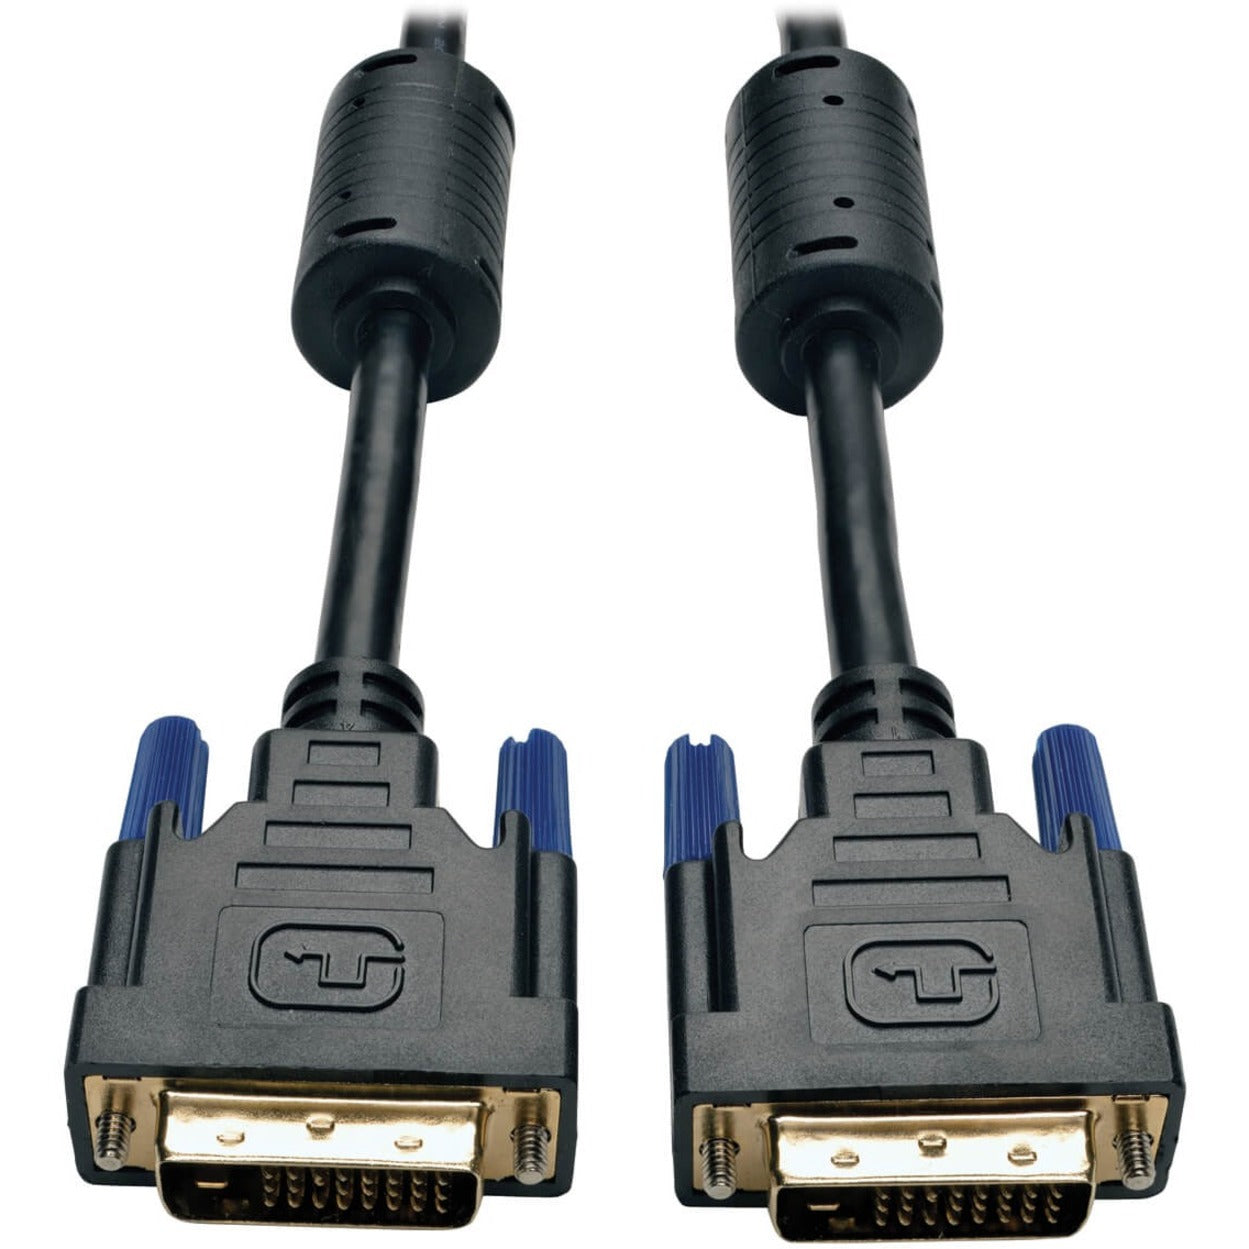 特性 名称 ： Tripp Lite P560-003 视频 电缆，DVI-D 数字 视频 - 男 对 DVI-D 数字 视频 - 男， 3 英尺， 成型， 铜 导体， 屏蔽， 镀 金 品牌名称：Tripp Lite